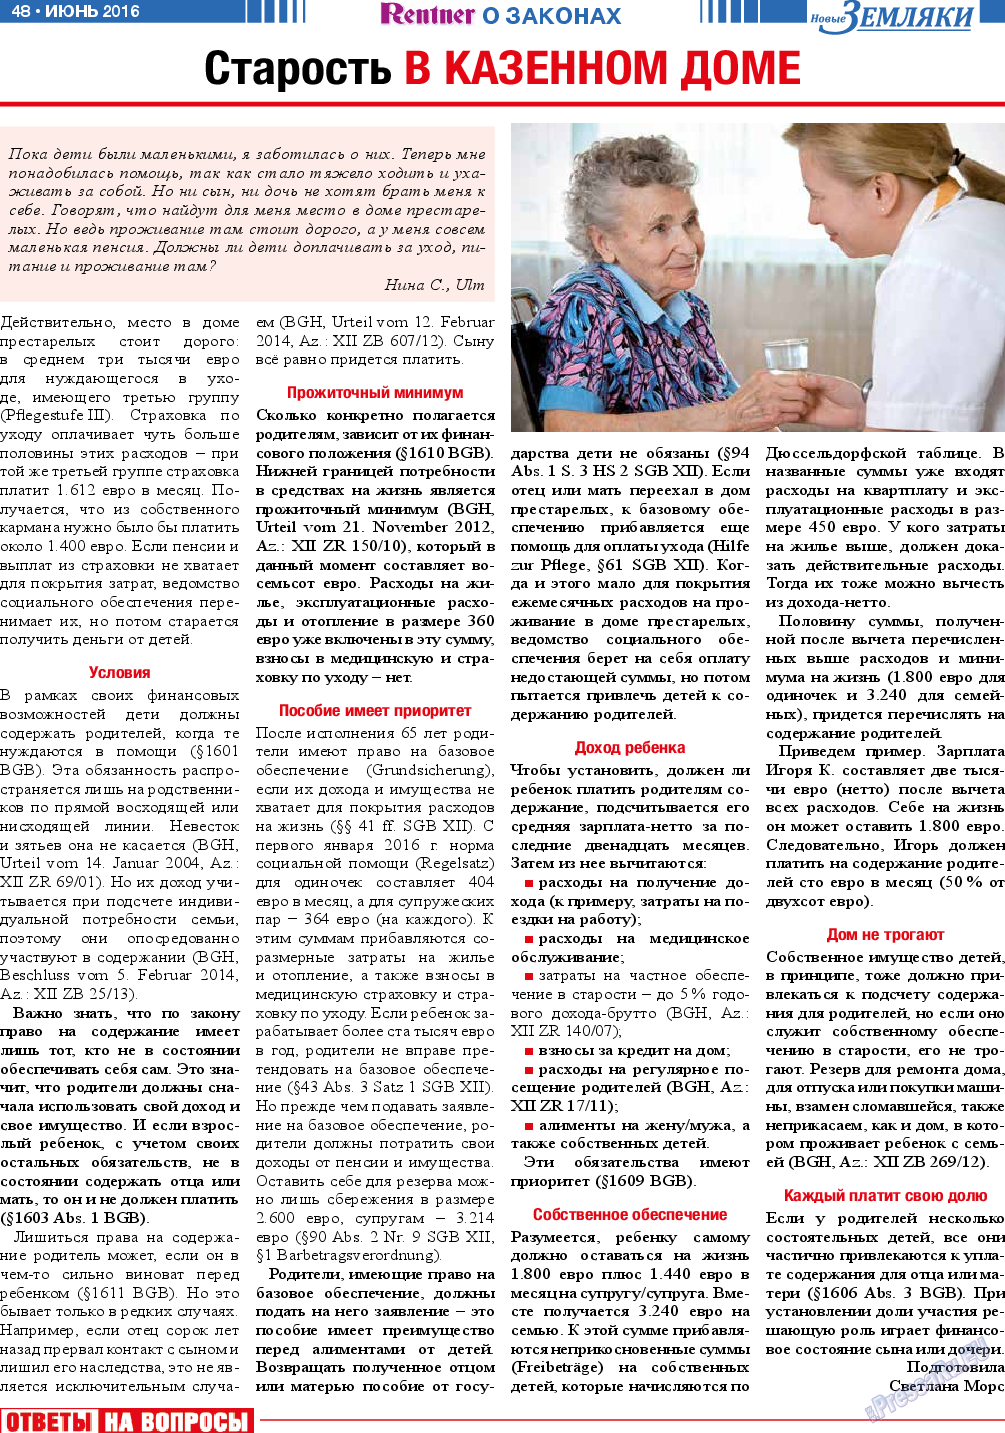 Новые Земляки, газета. 2016 №6 стр.48